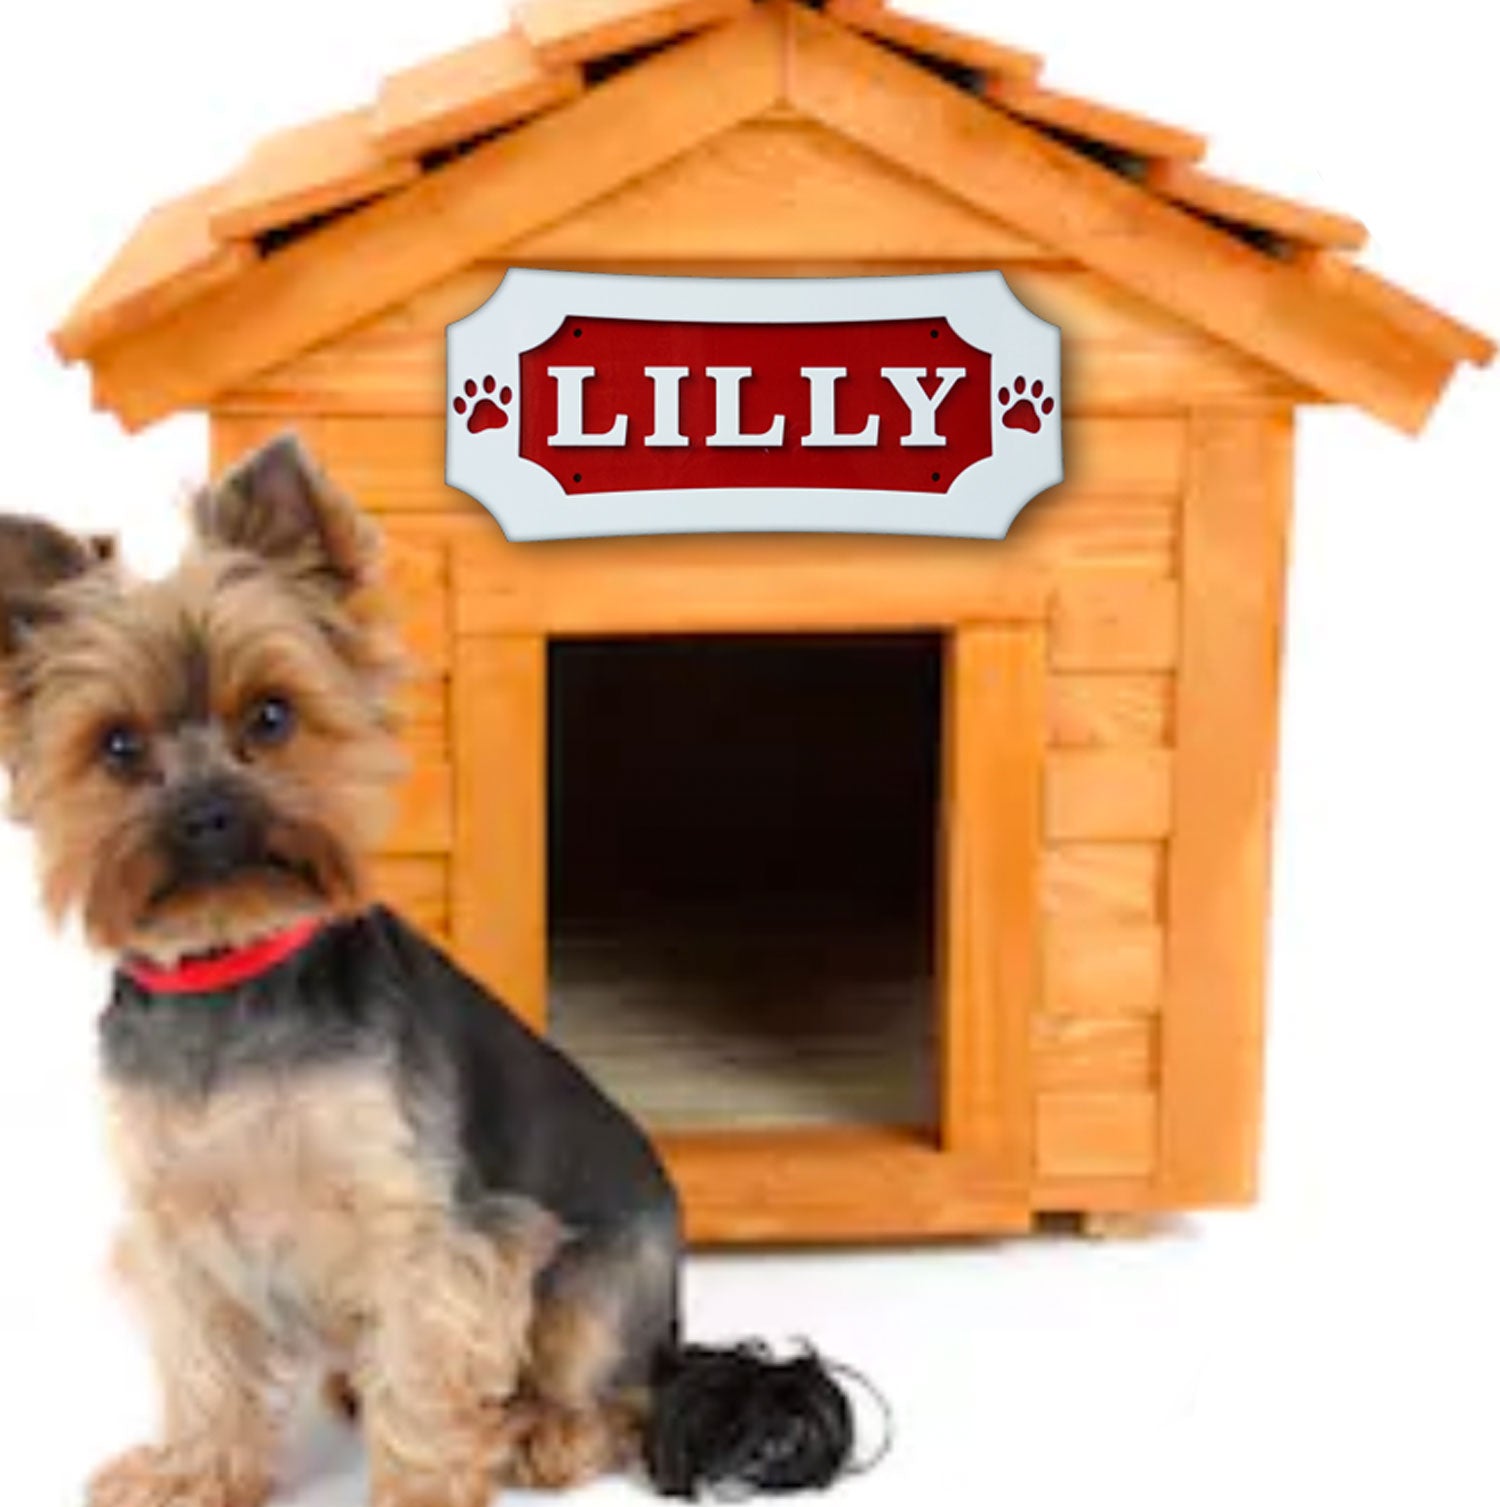 Dog House Name Sign